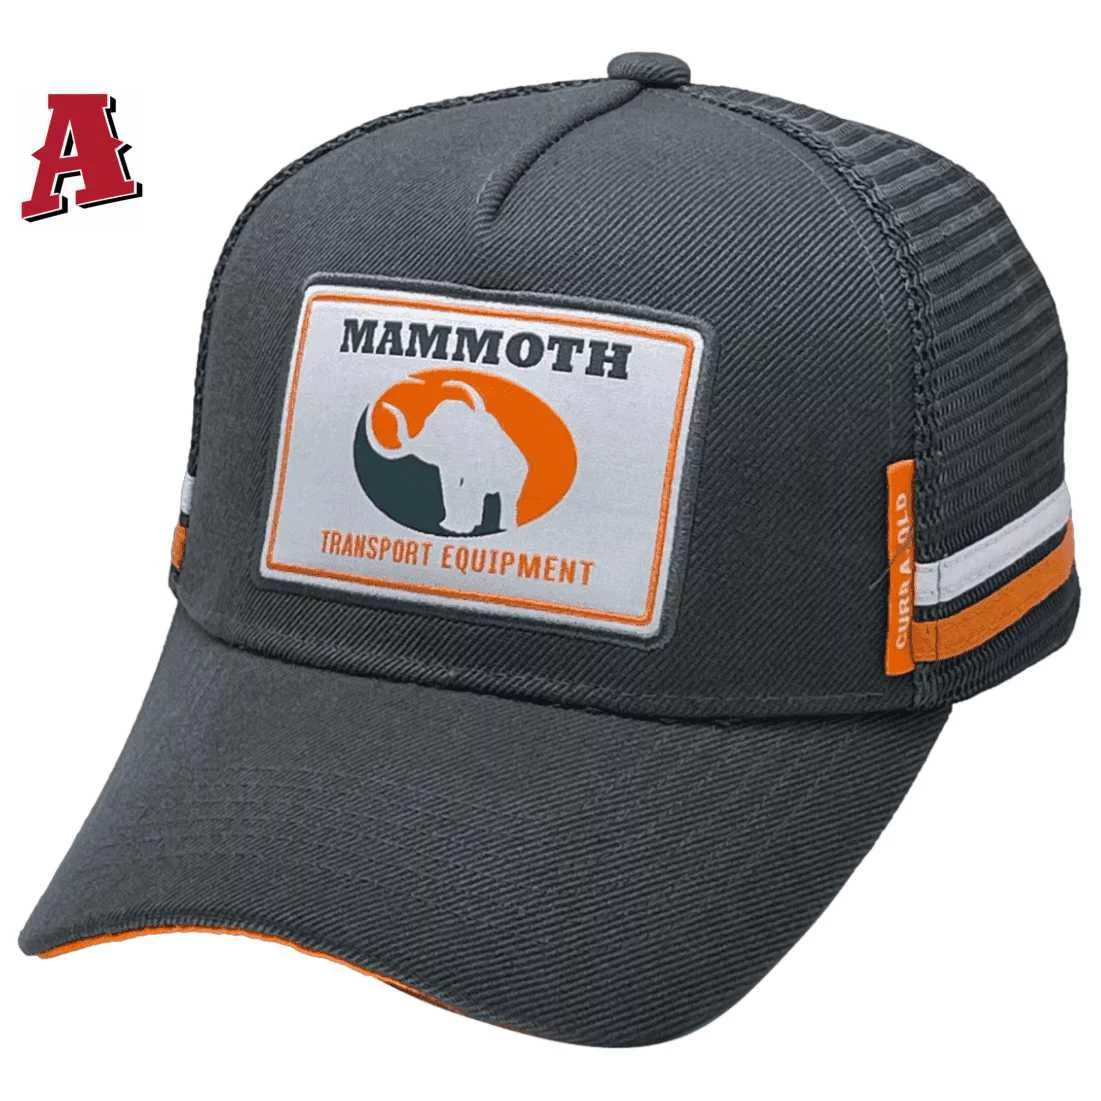 Mammoth Transport Equipment  Wynnum QLD LP Basic Aussie Trucker Hats with 2 Side Bands and Australian Head Fit Crown Dark Grey Orange